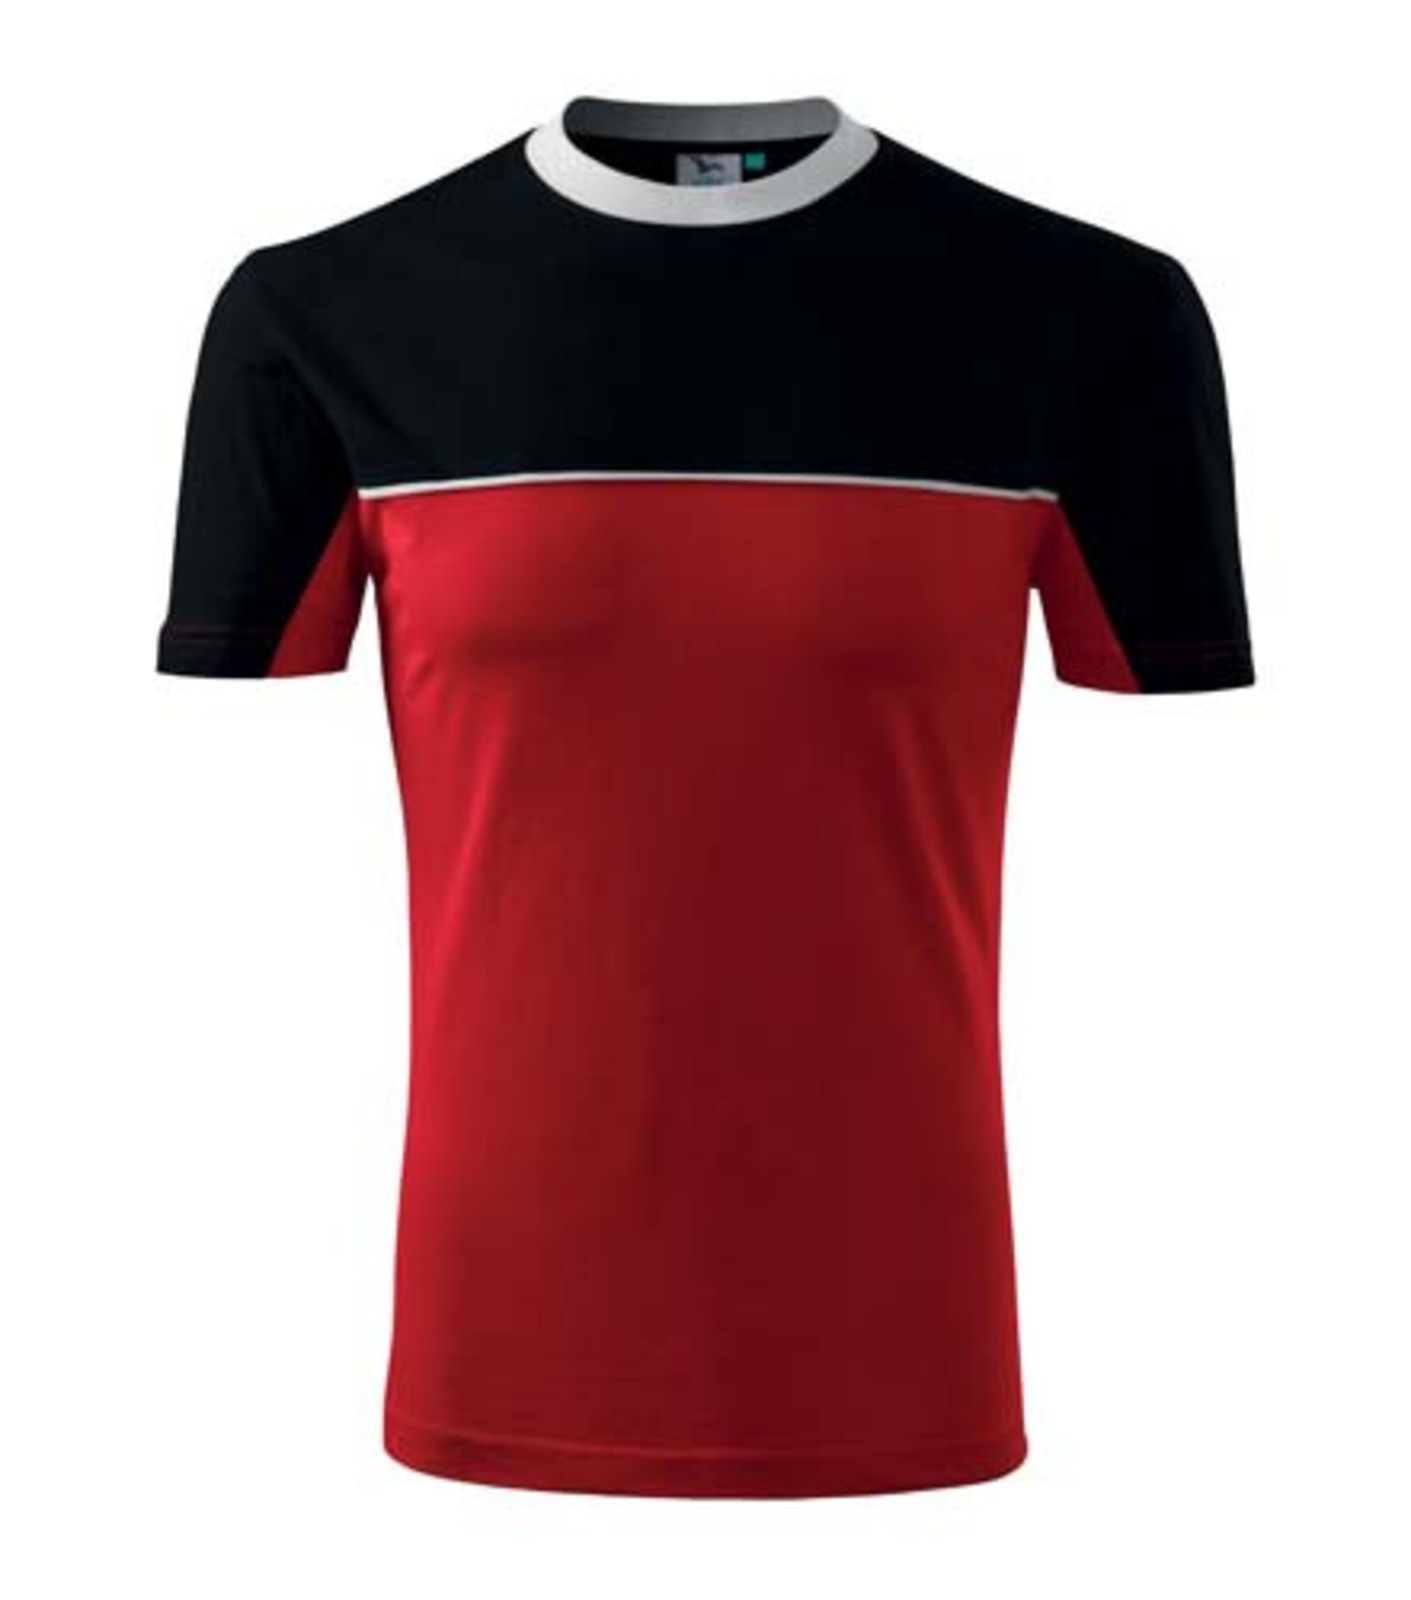 Unisex tričko Rimeck Colormix 109 - veľkosť: XXL, farba: červená/čierna